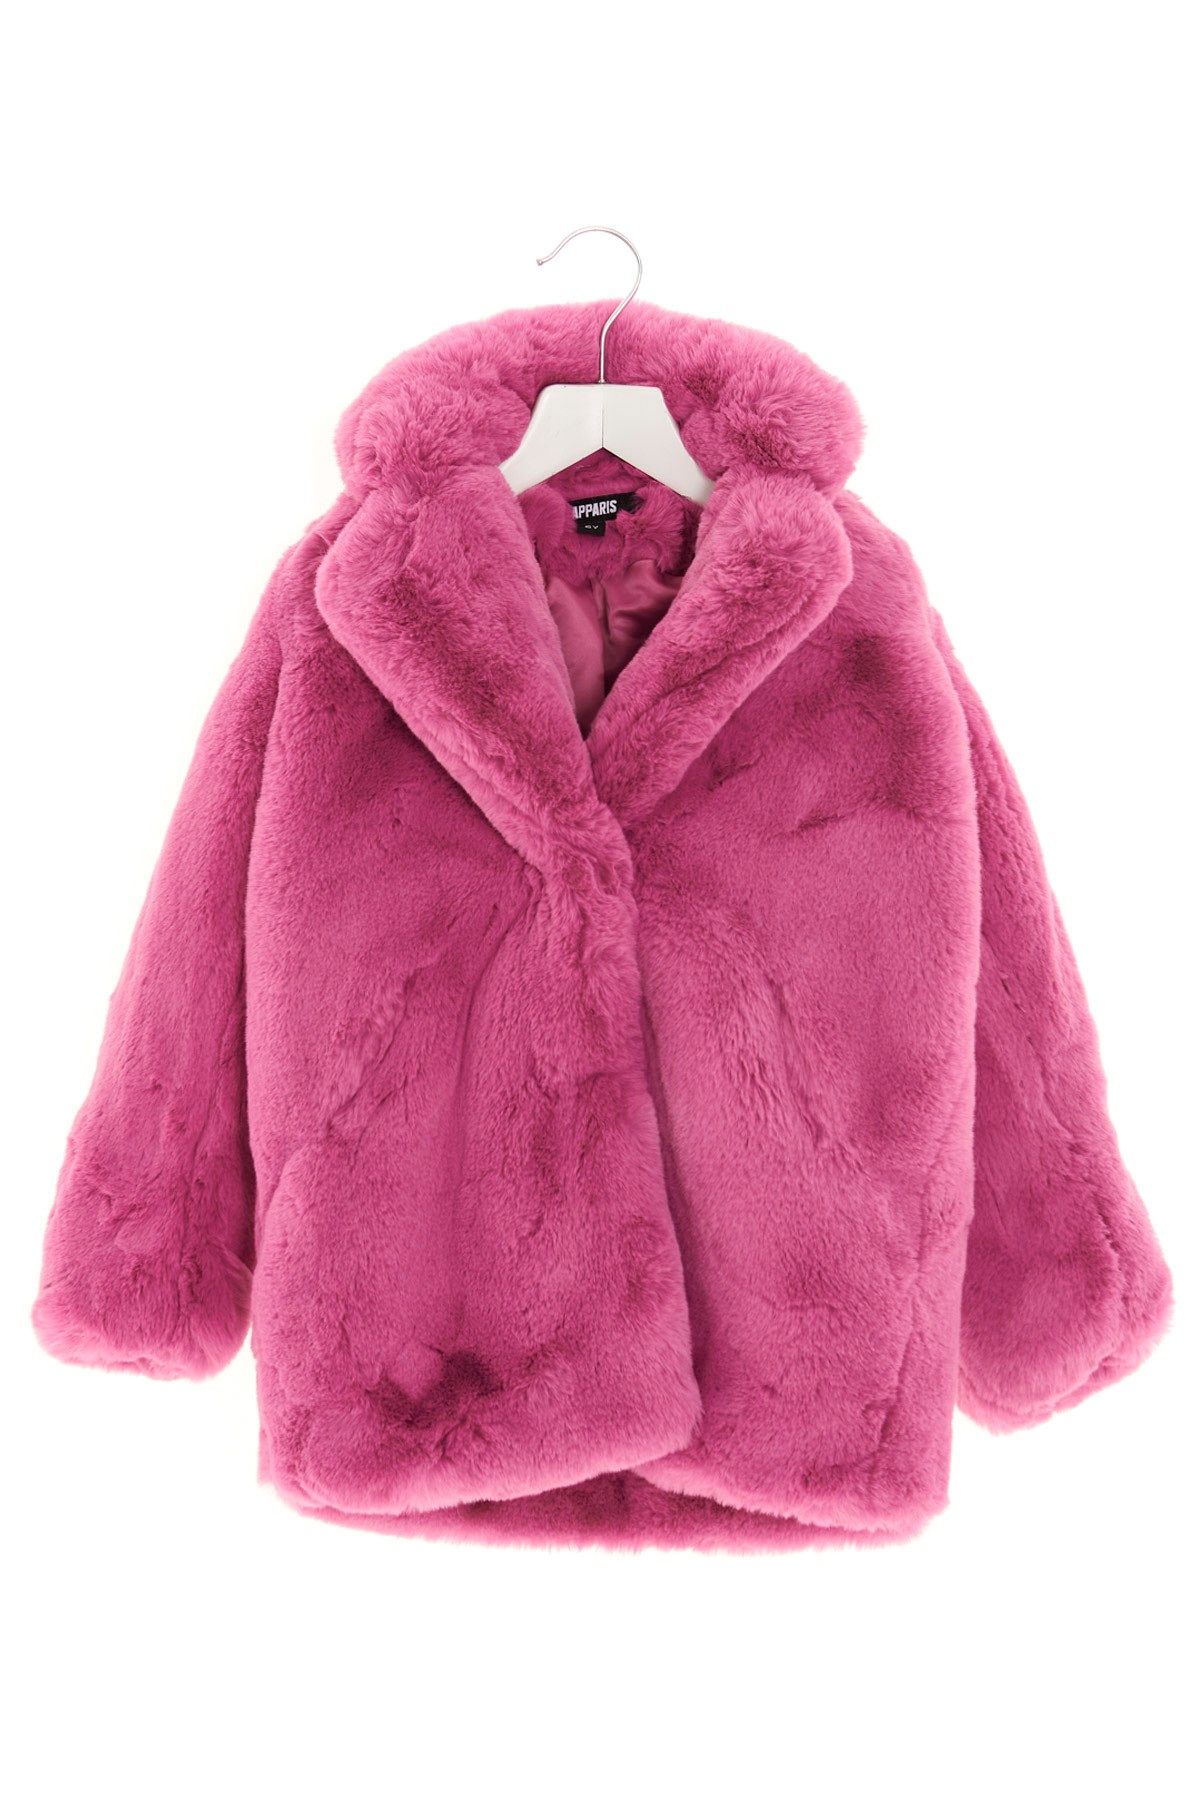 APPARIS 'Stella’ Eco Fur Coat